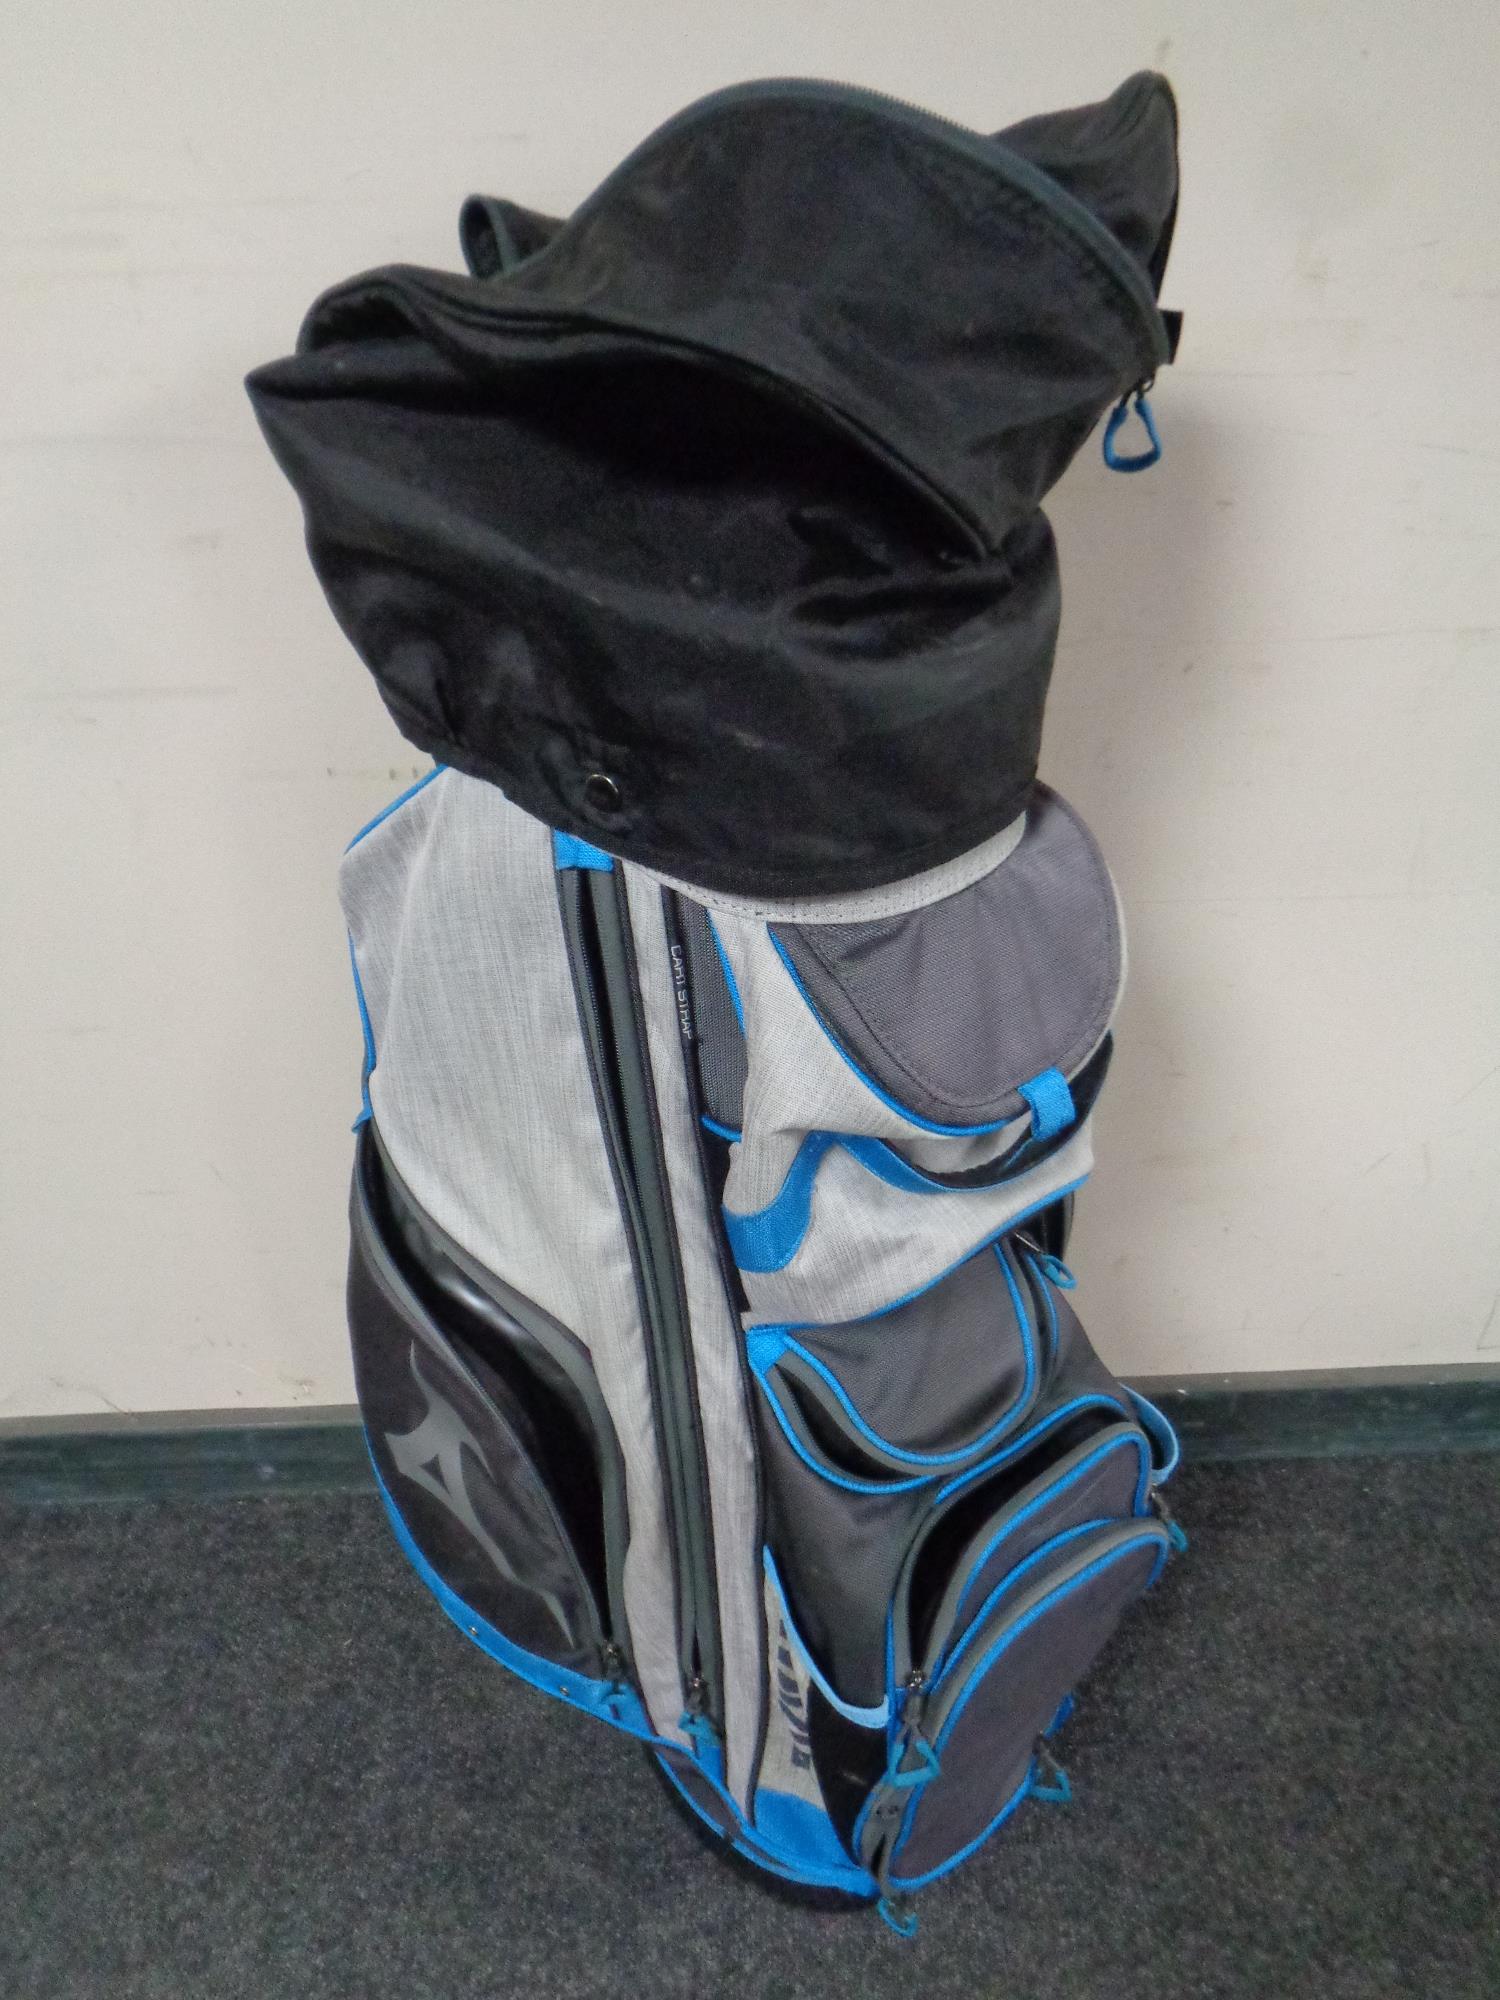 A Mizuno golf bag